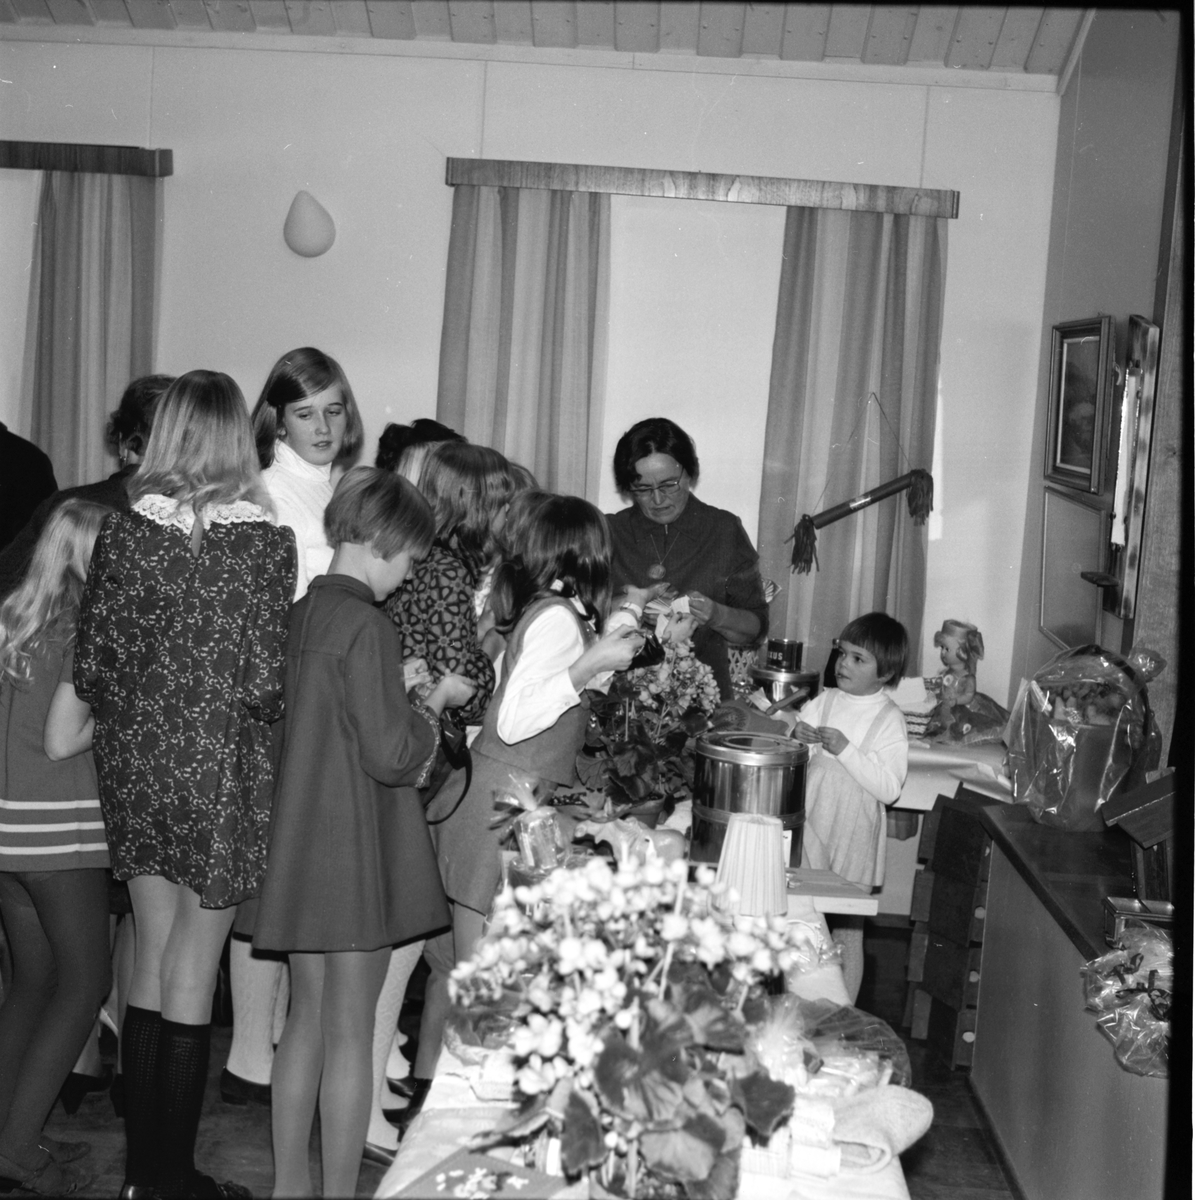 Arbrå, Flästa logens julmarknad, december 1968. Signe Frank berättar. Dottern Kerstin m fl lyssnar.